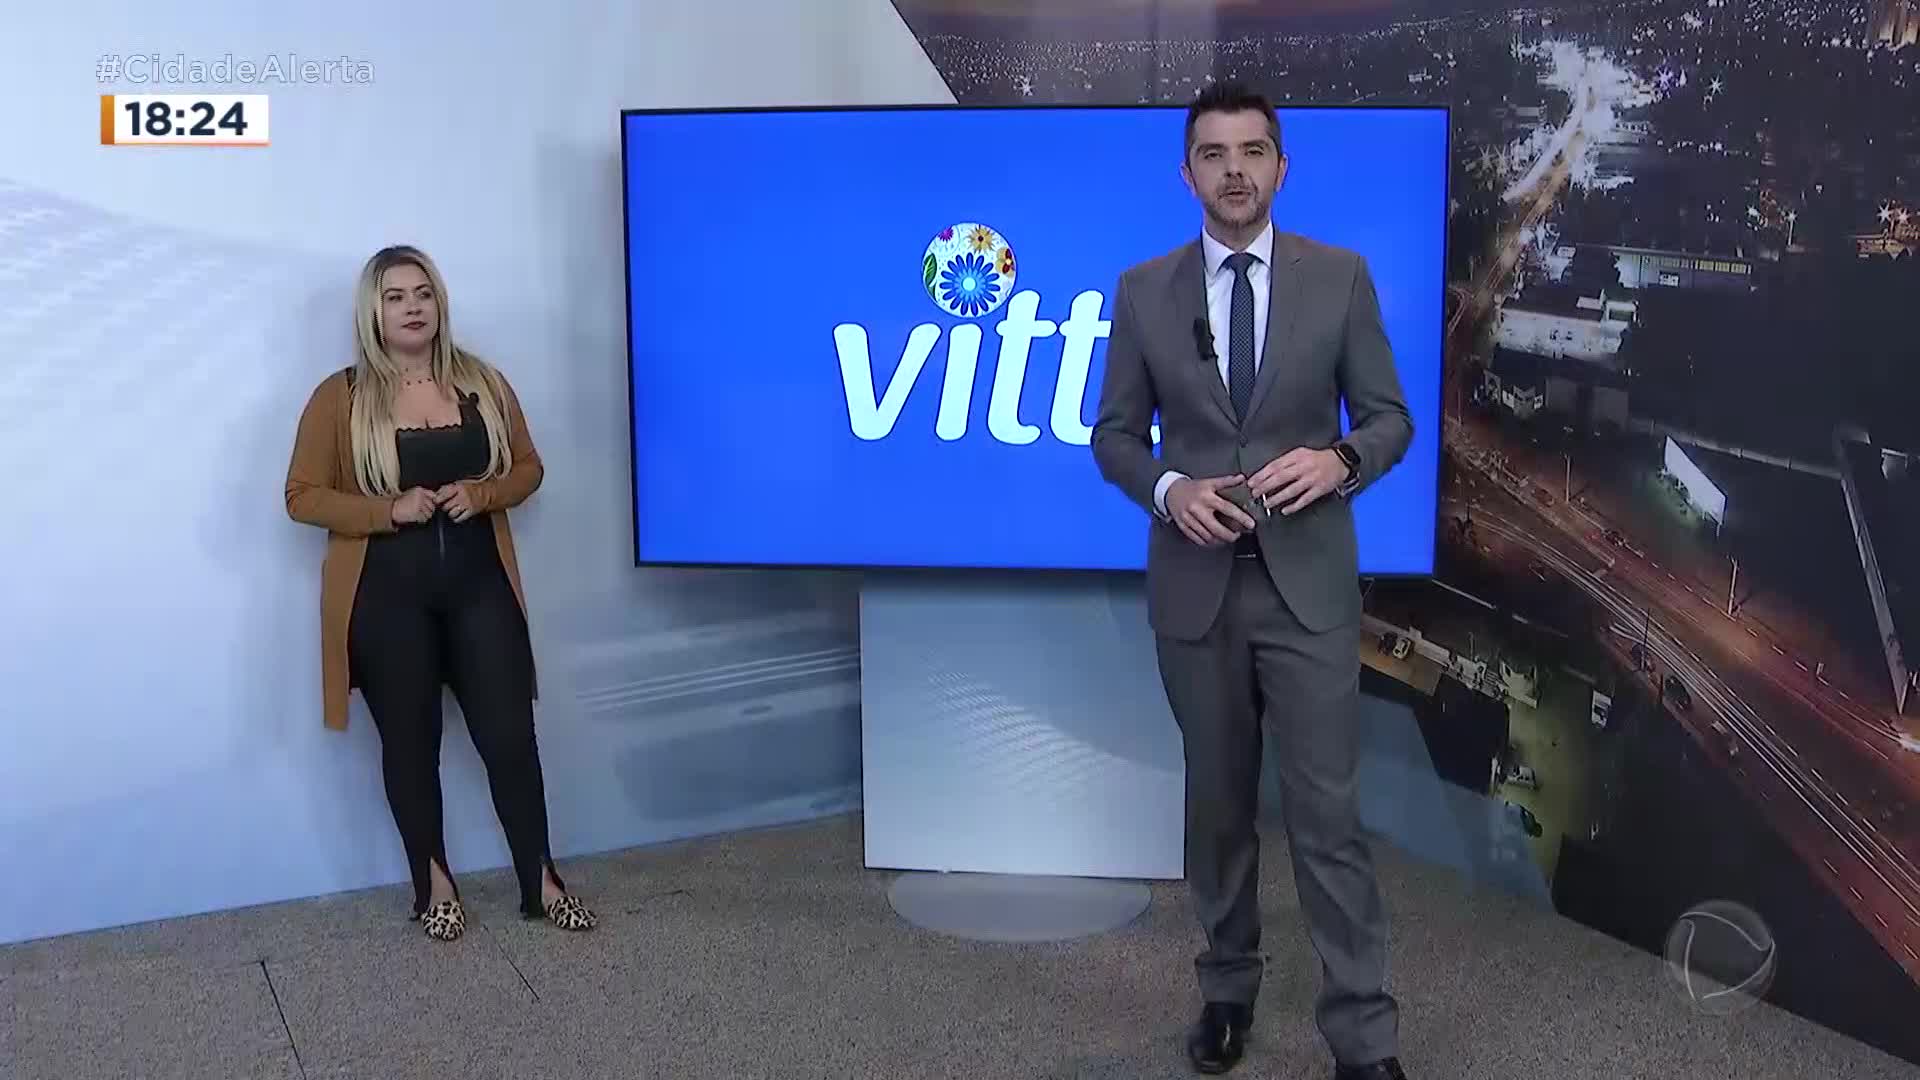 Vídeo: Vitta - Cidade Alerta Interior - Exibido em 25/05/2022